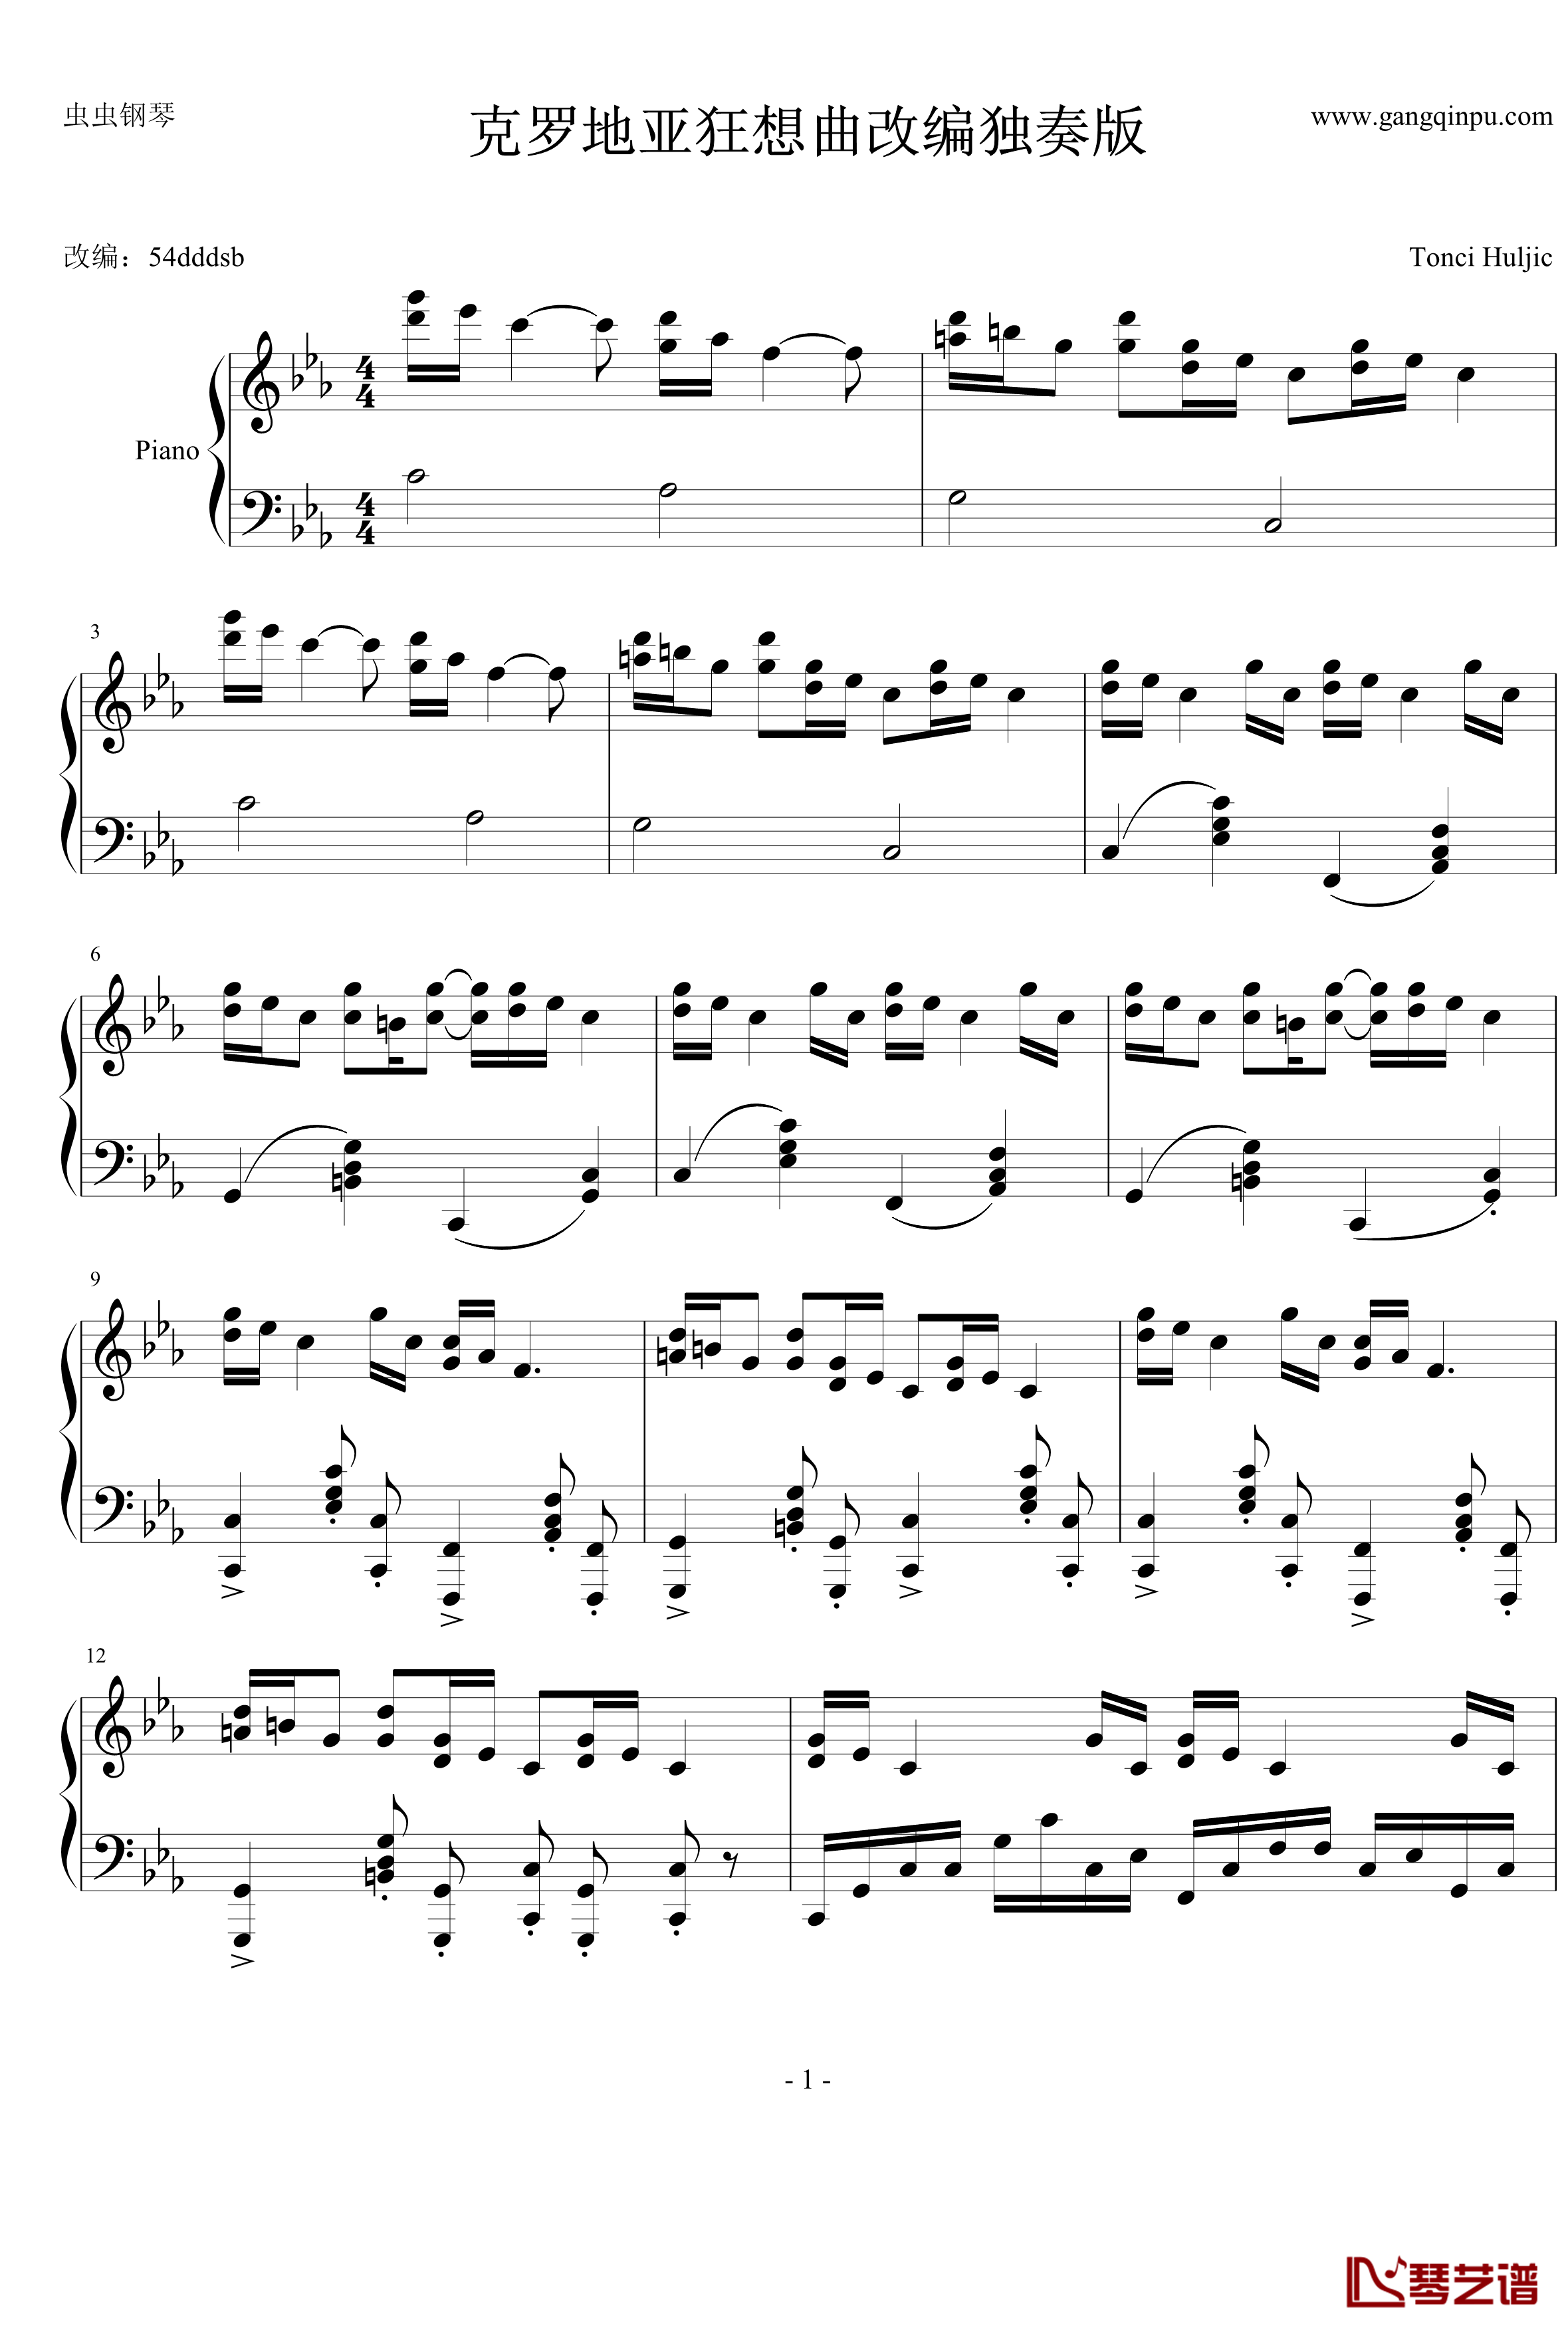 克罗地亚狂想曲钢琴谱-改编独奏版-马克西姆-Maksim·Mrvica1